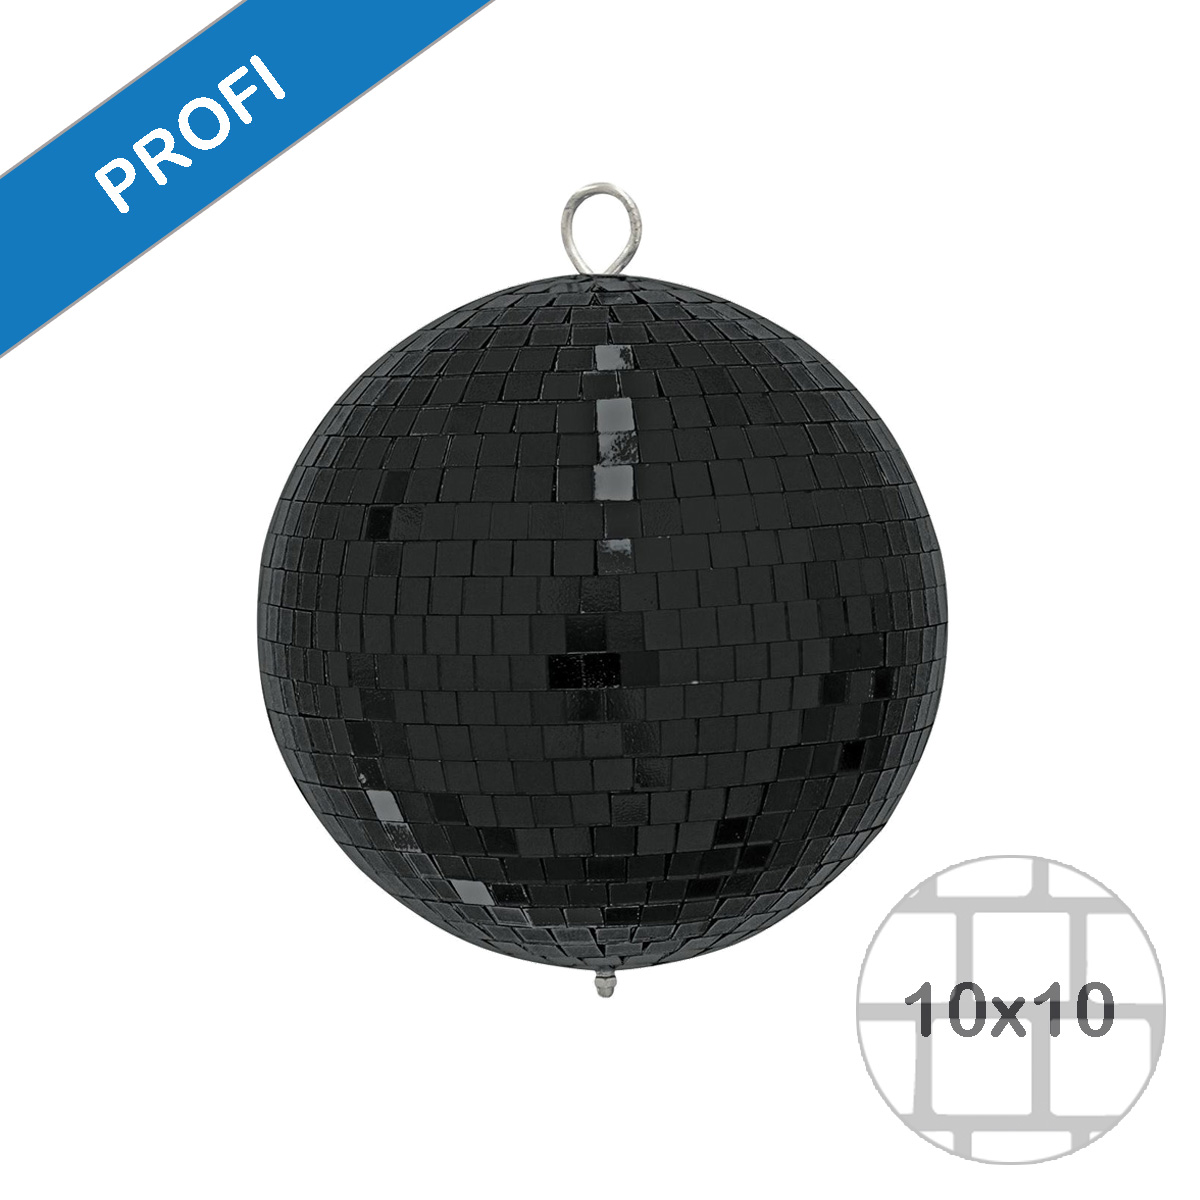 Spiegelkugel 20cm farbig schwarz- Diskokugel (Discokugel) zur Dekoration und Party- Echtglas - mirrorball black colored